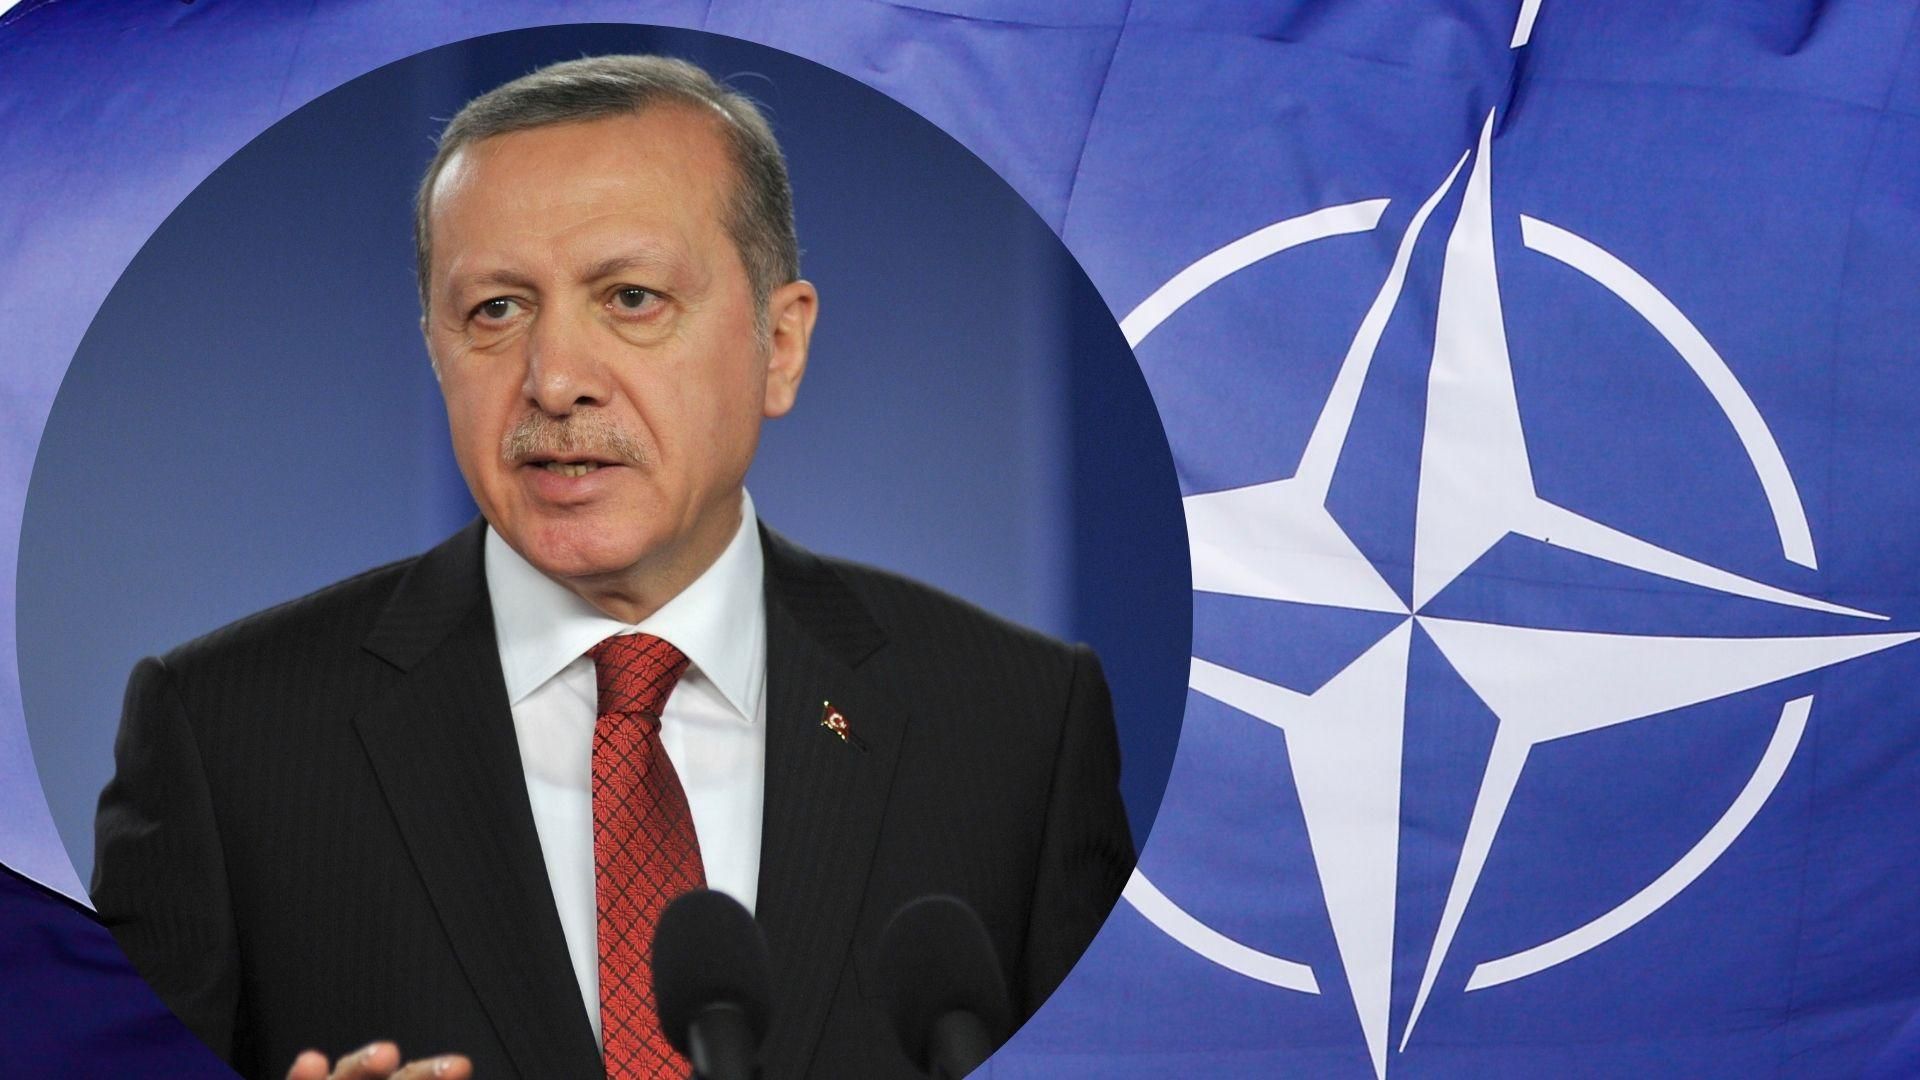 Делегації Швеції та Фінляндії їдуть в Туреччину для переговорів щодо їх вступу в НАТО